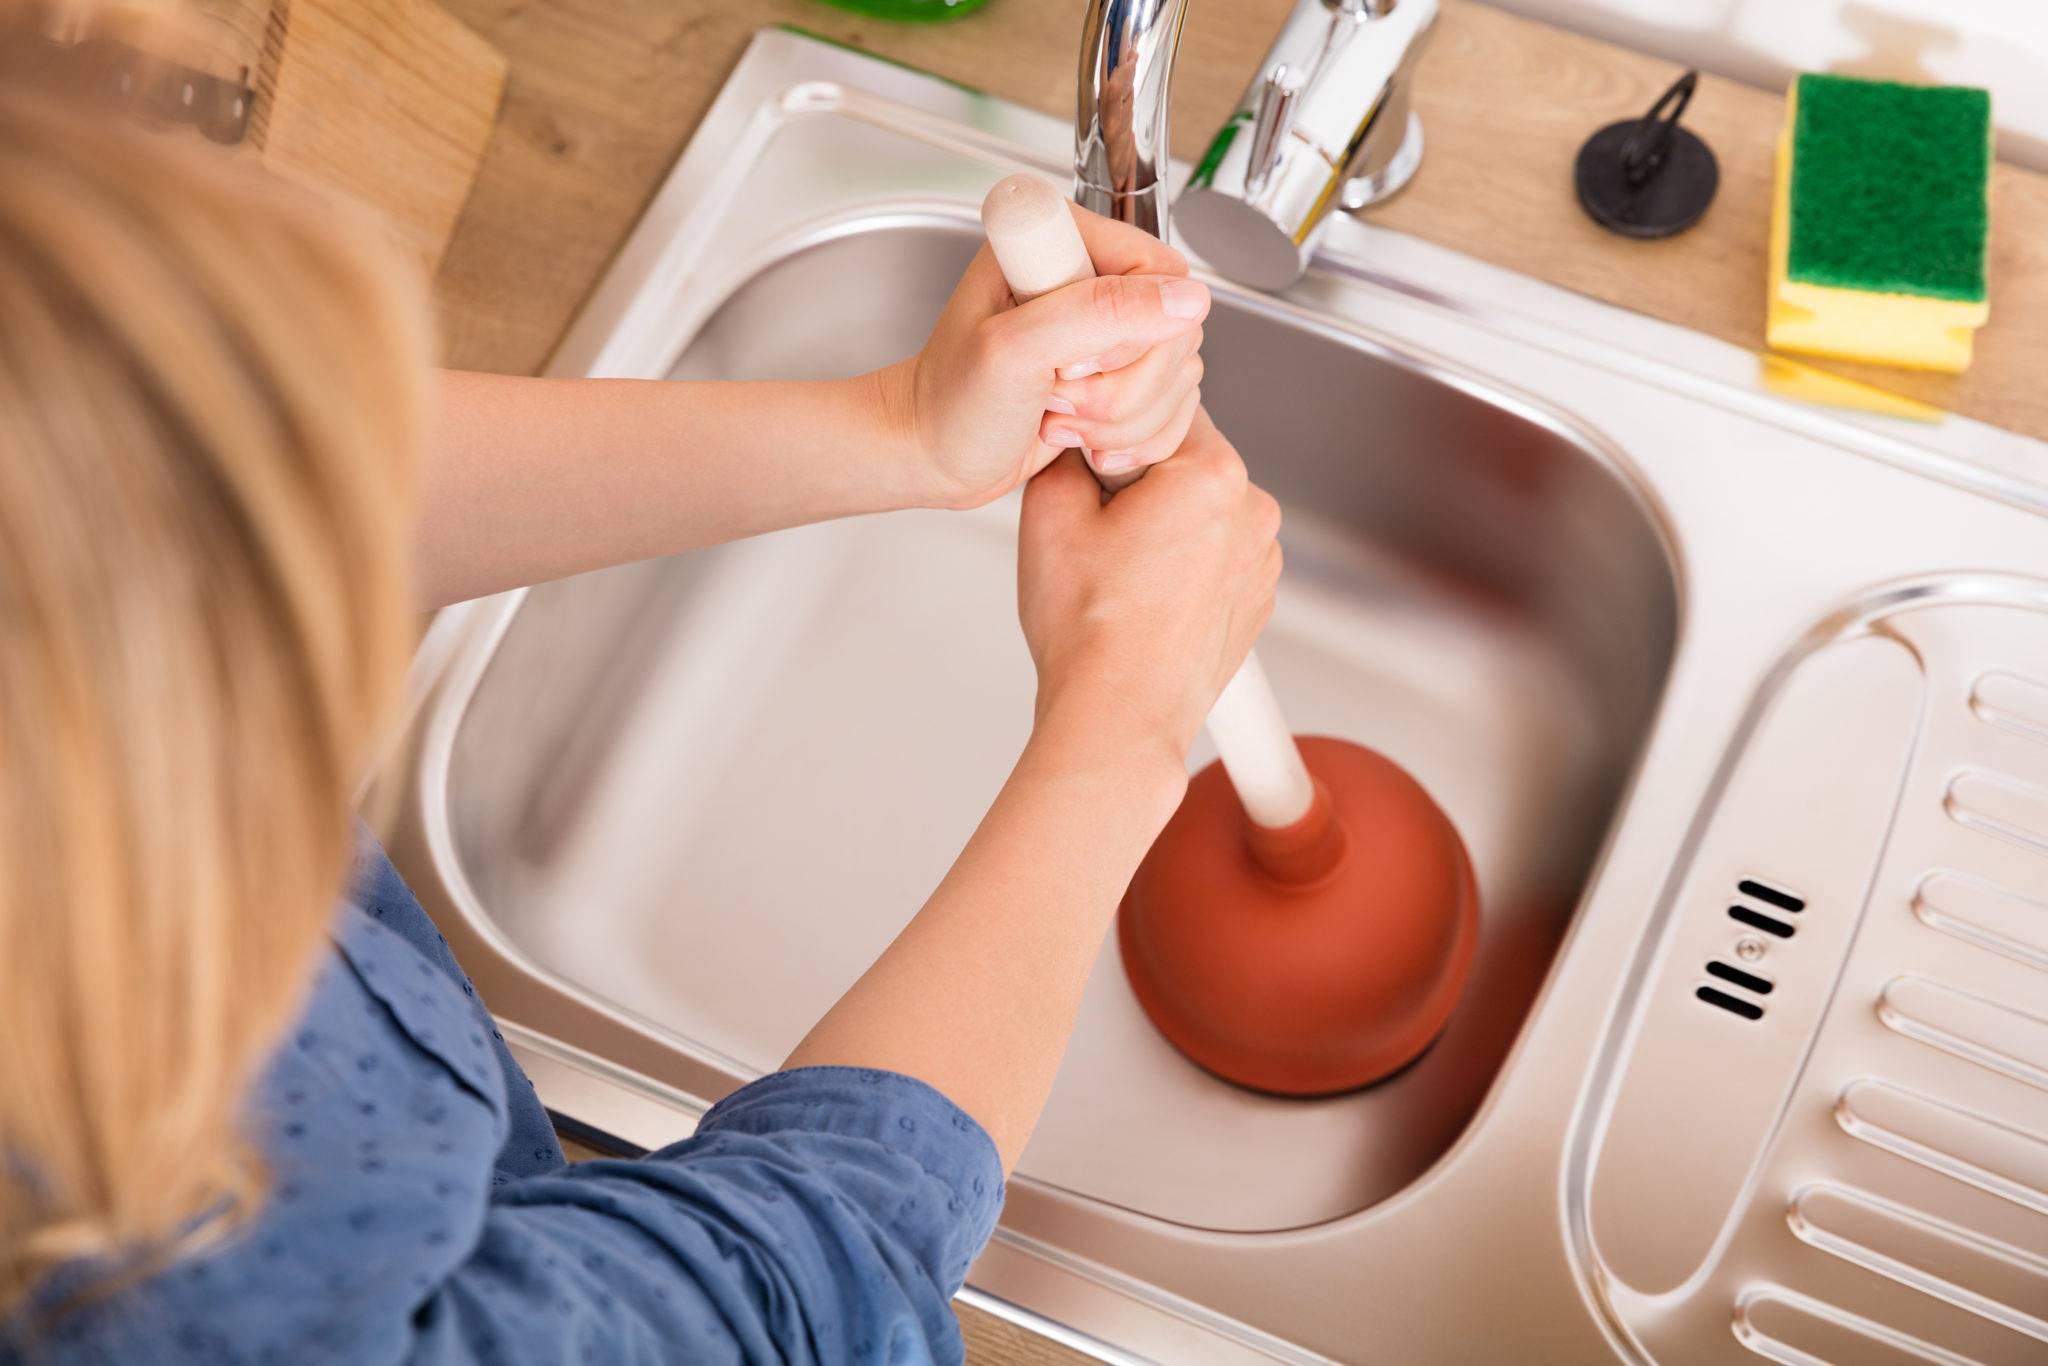 Как устранить засор в раковине на кухне в домашних условиях: прочистить трубу механическим способом, удалить народными средствами, быстро убрать специальной химией?